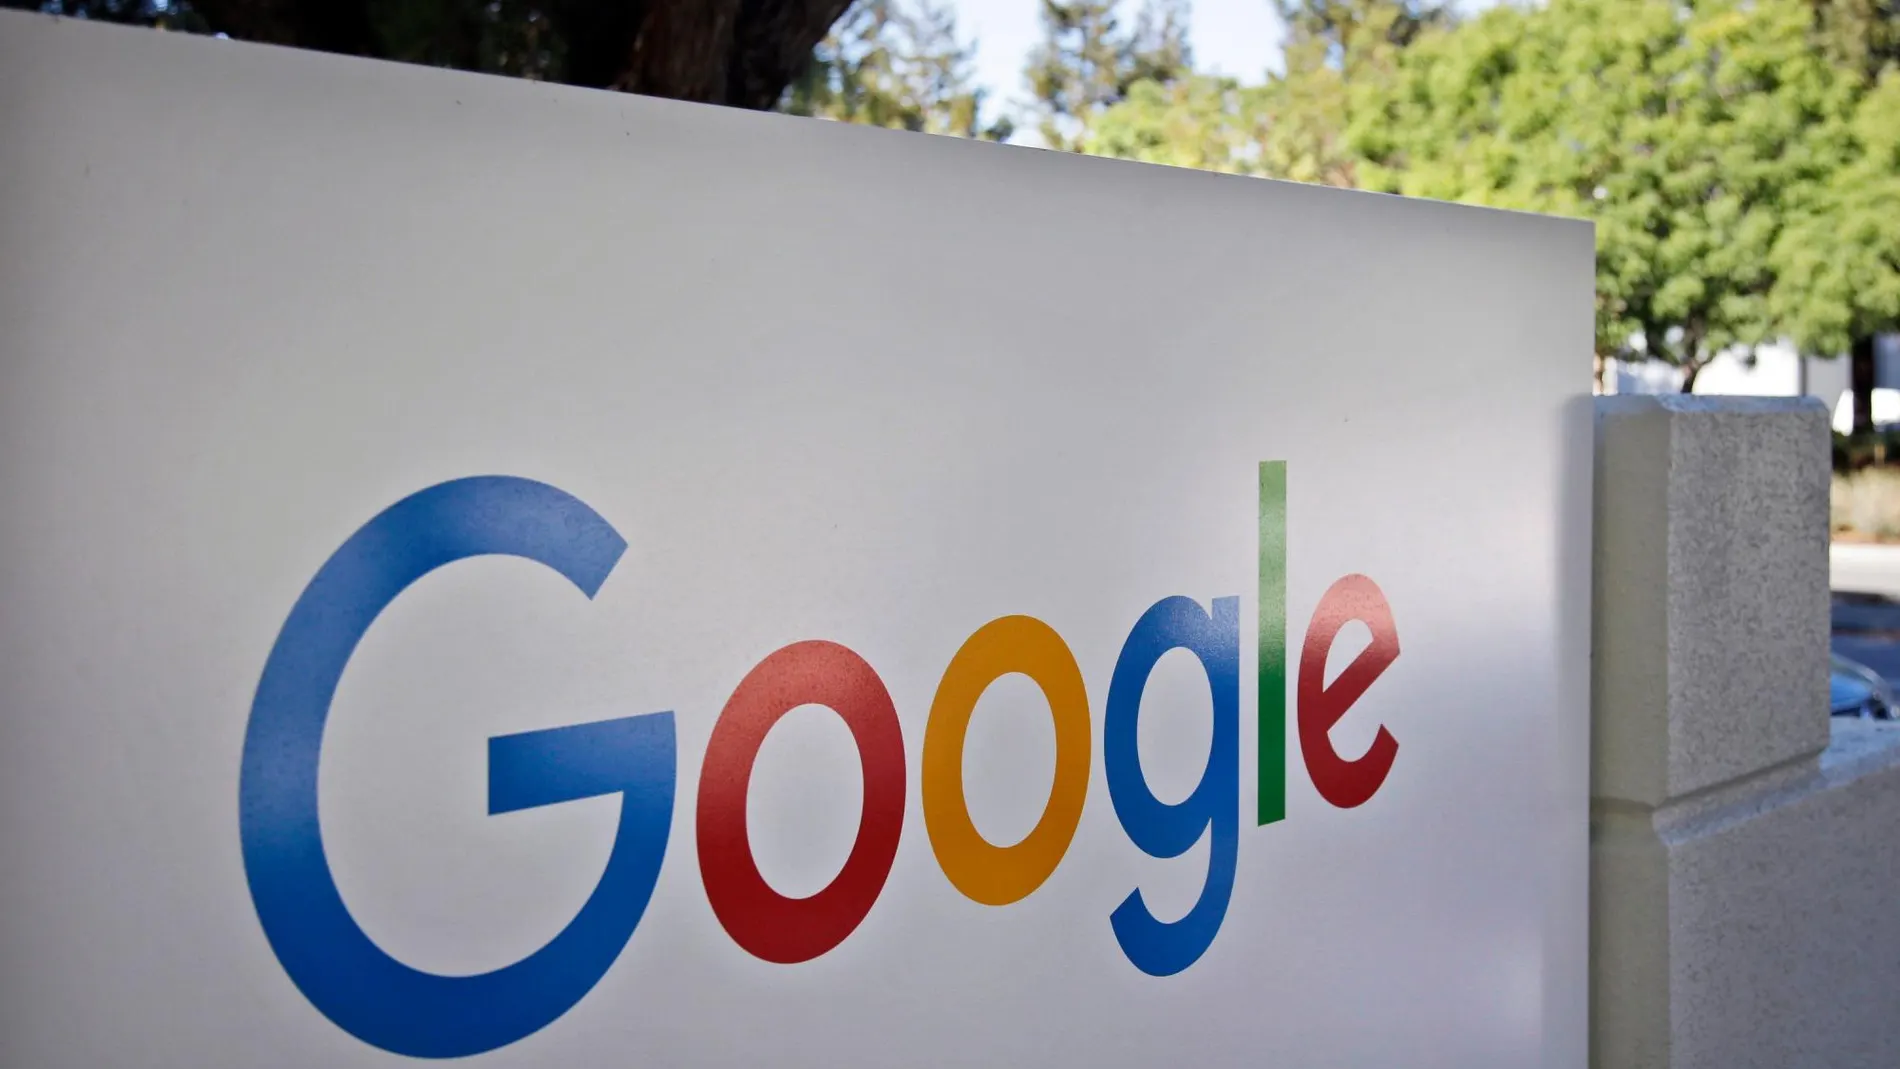 Google Chrome incorporará su bloqueador de anuncios a nivel mundial en verano